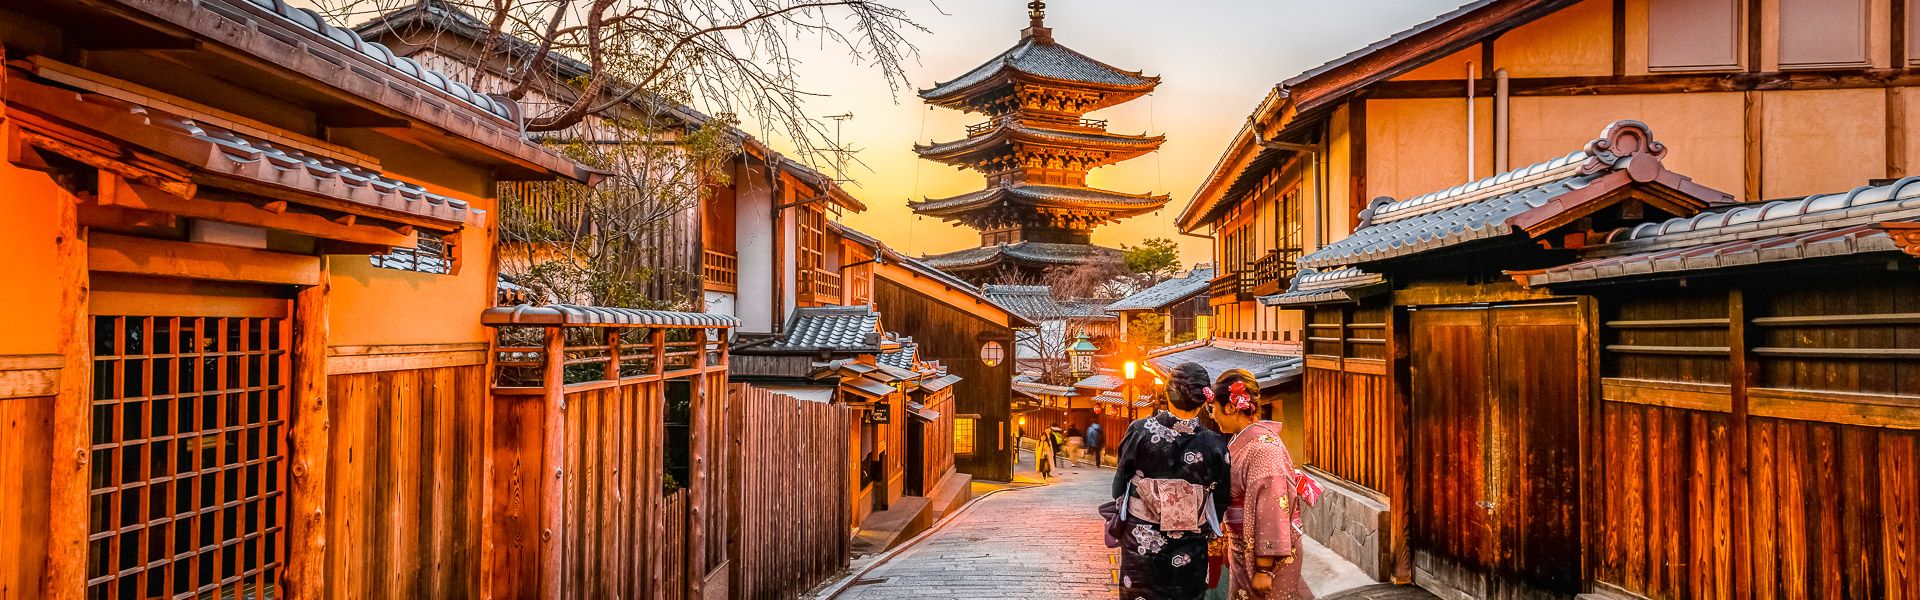 Geishas in der Altstadt von Kyoto |  Sorasak, Unsplash / Chamleon